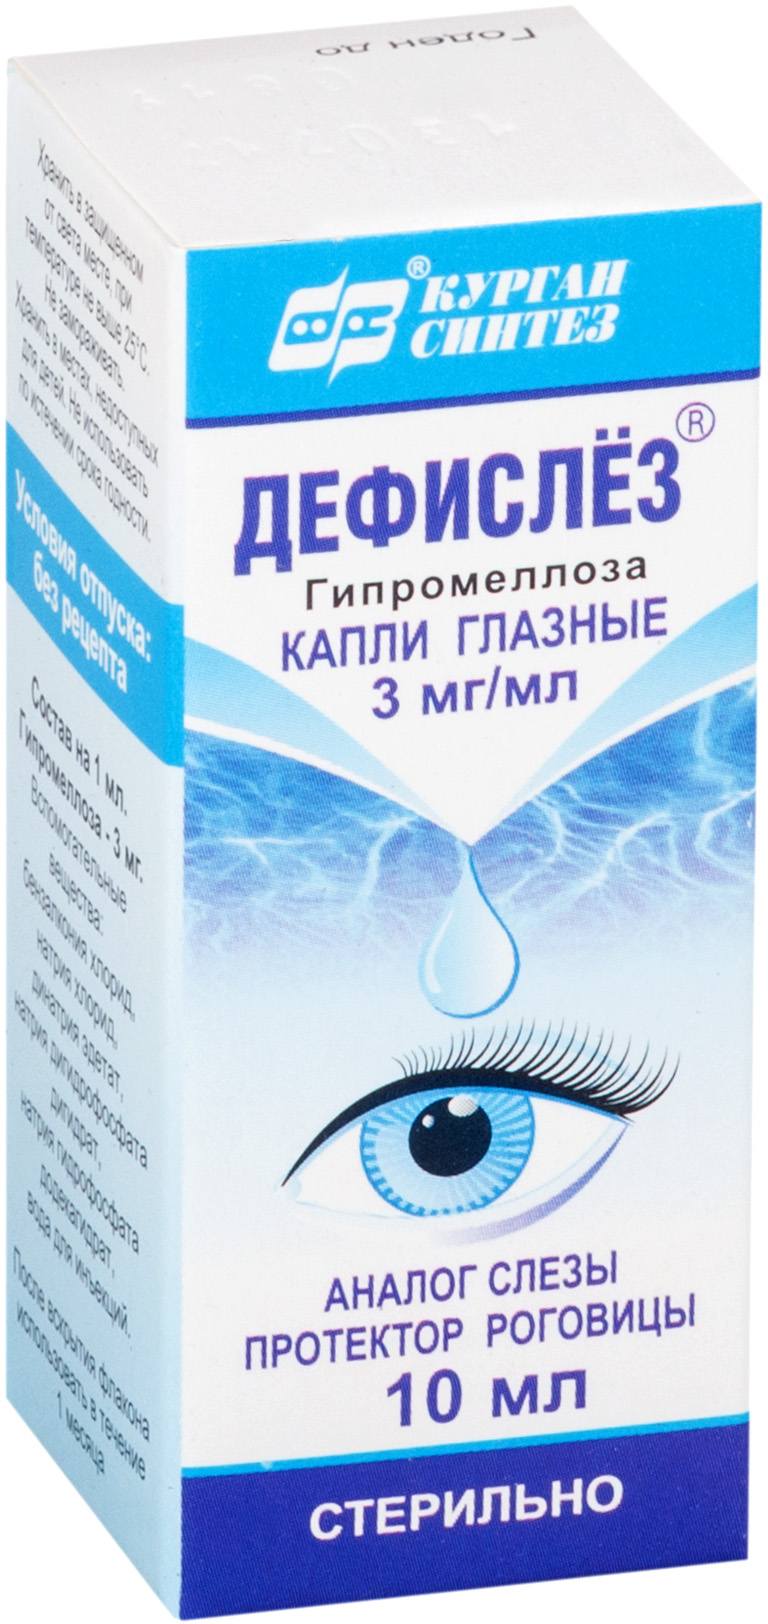 Дефислез, капли глазные 3 мг/мл, 10 мл дорзоламид оптик капли глазные 20мг мл 5мл